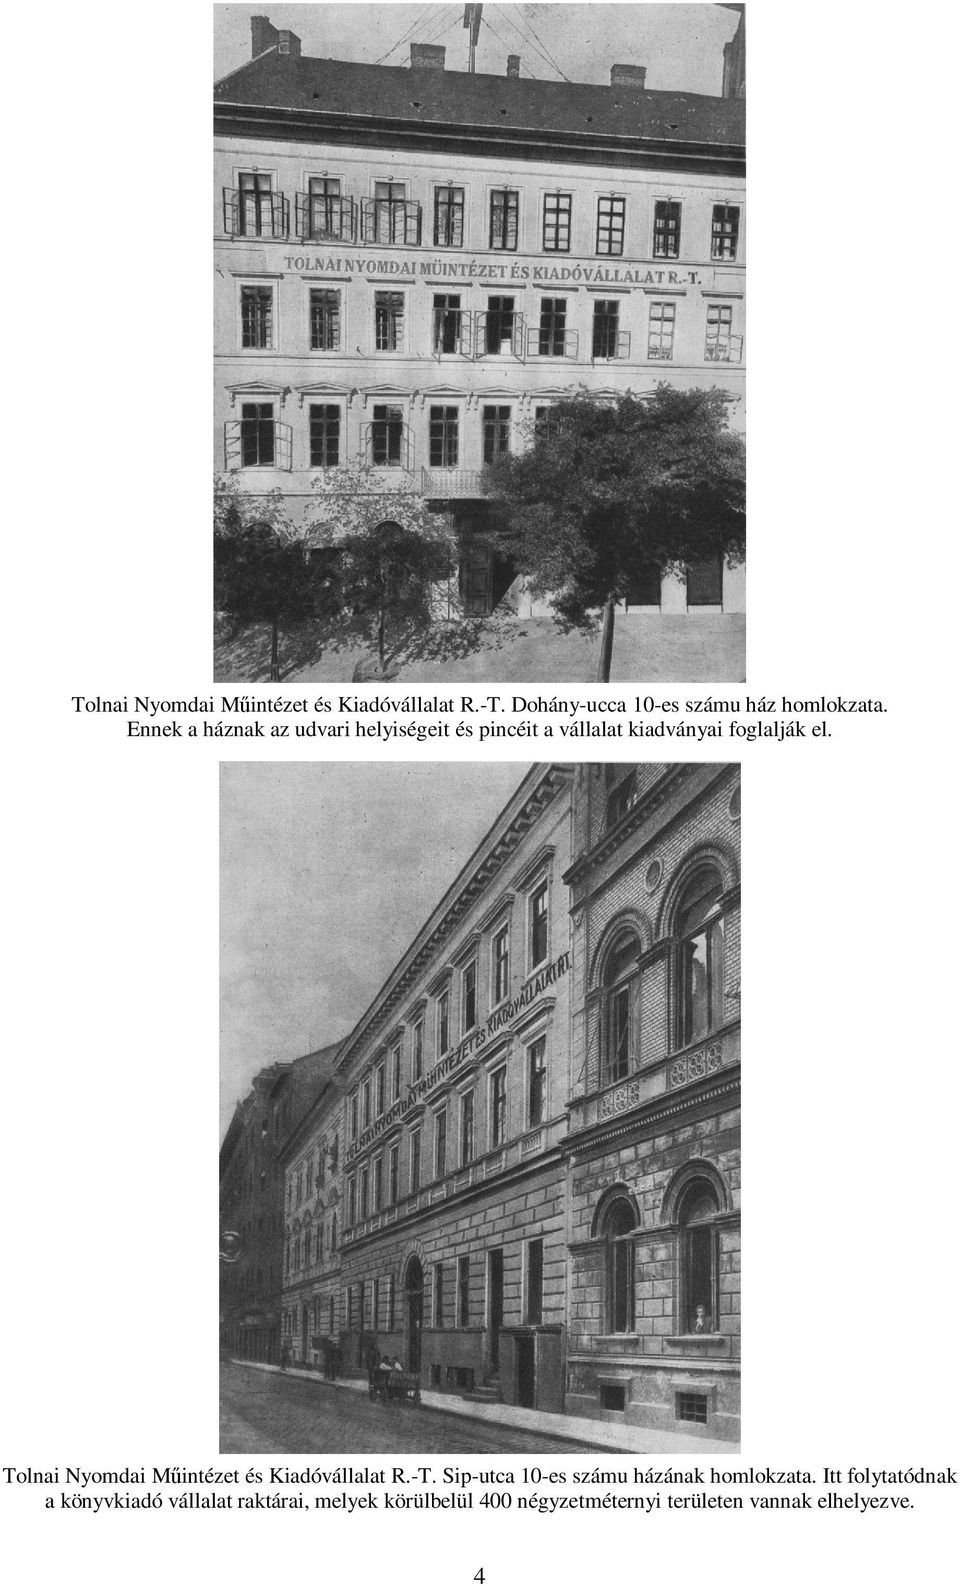 Tolnai Nyomdai Műintézet és Kiadóvállalat R.-T. Sip-utca 10-es számu házának homlokzata.